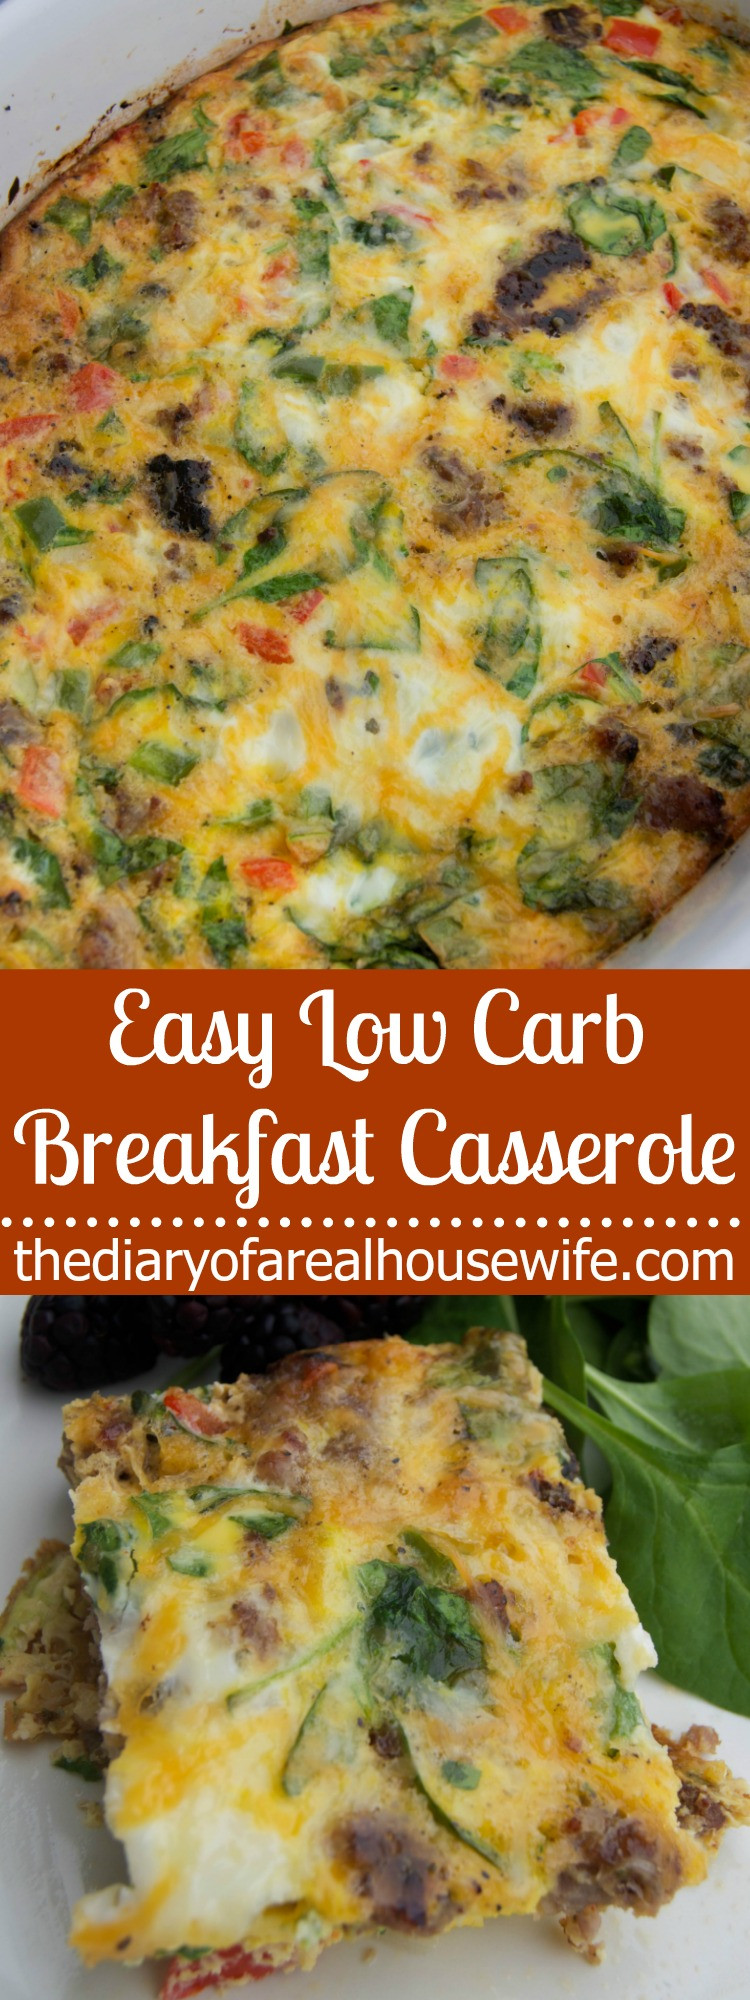 Easy Keto Breakfast Casserole
 10 Best Keto Breakfast Casserole Recipes for Ketogenic Diet